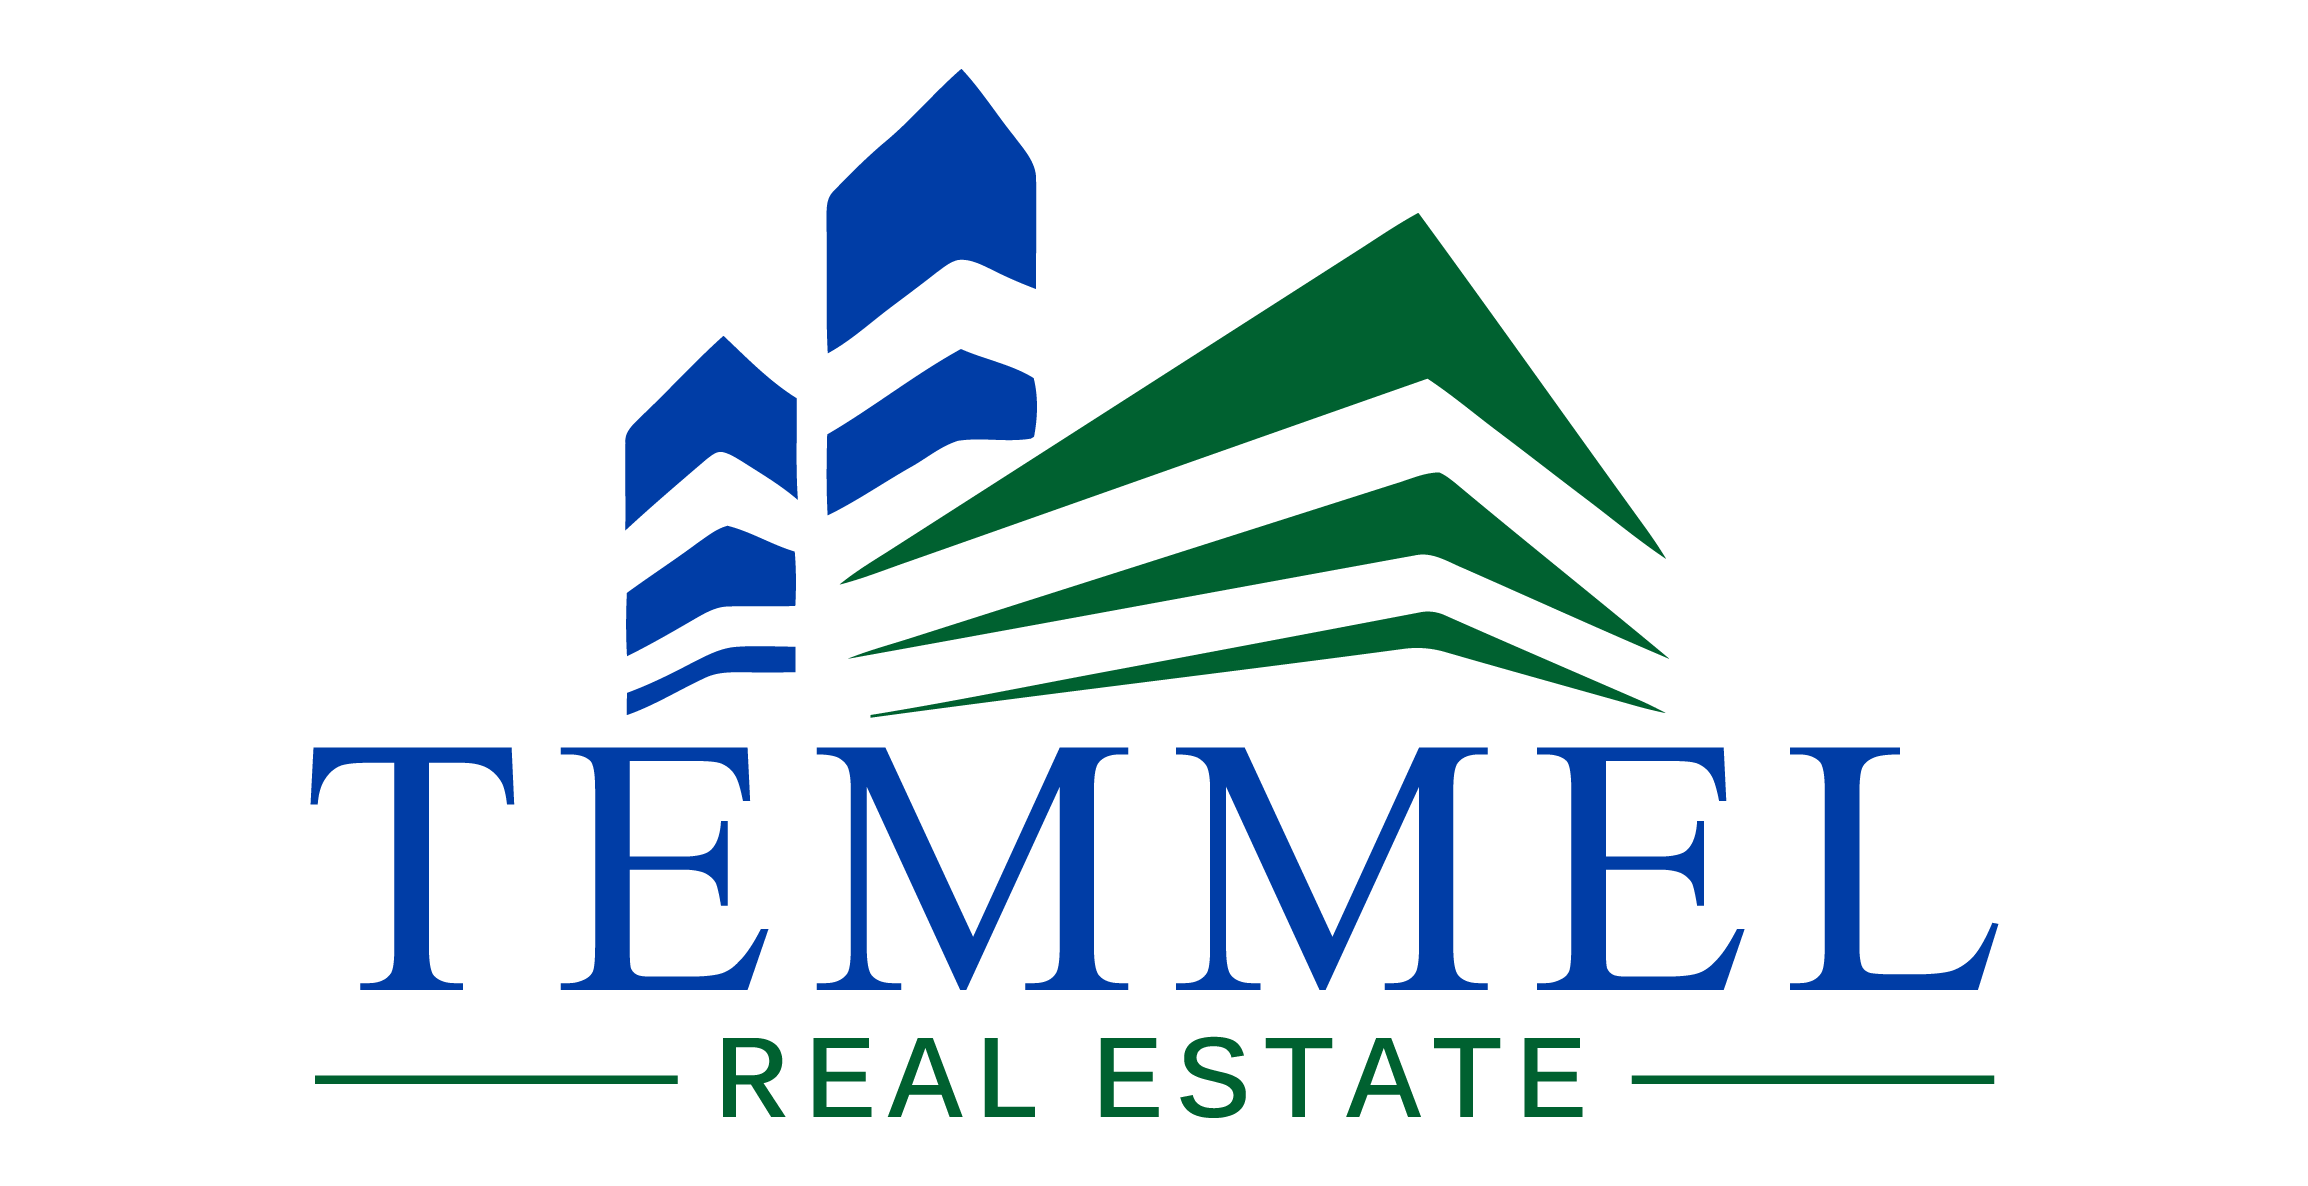 Temmel Real Estate